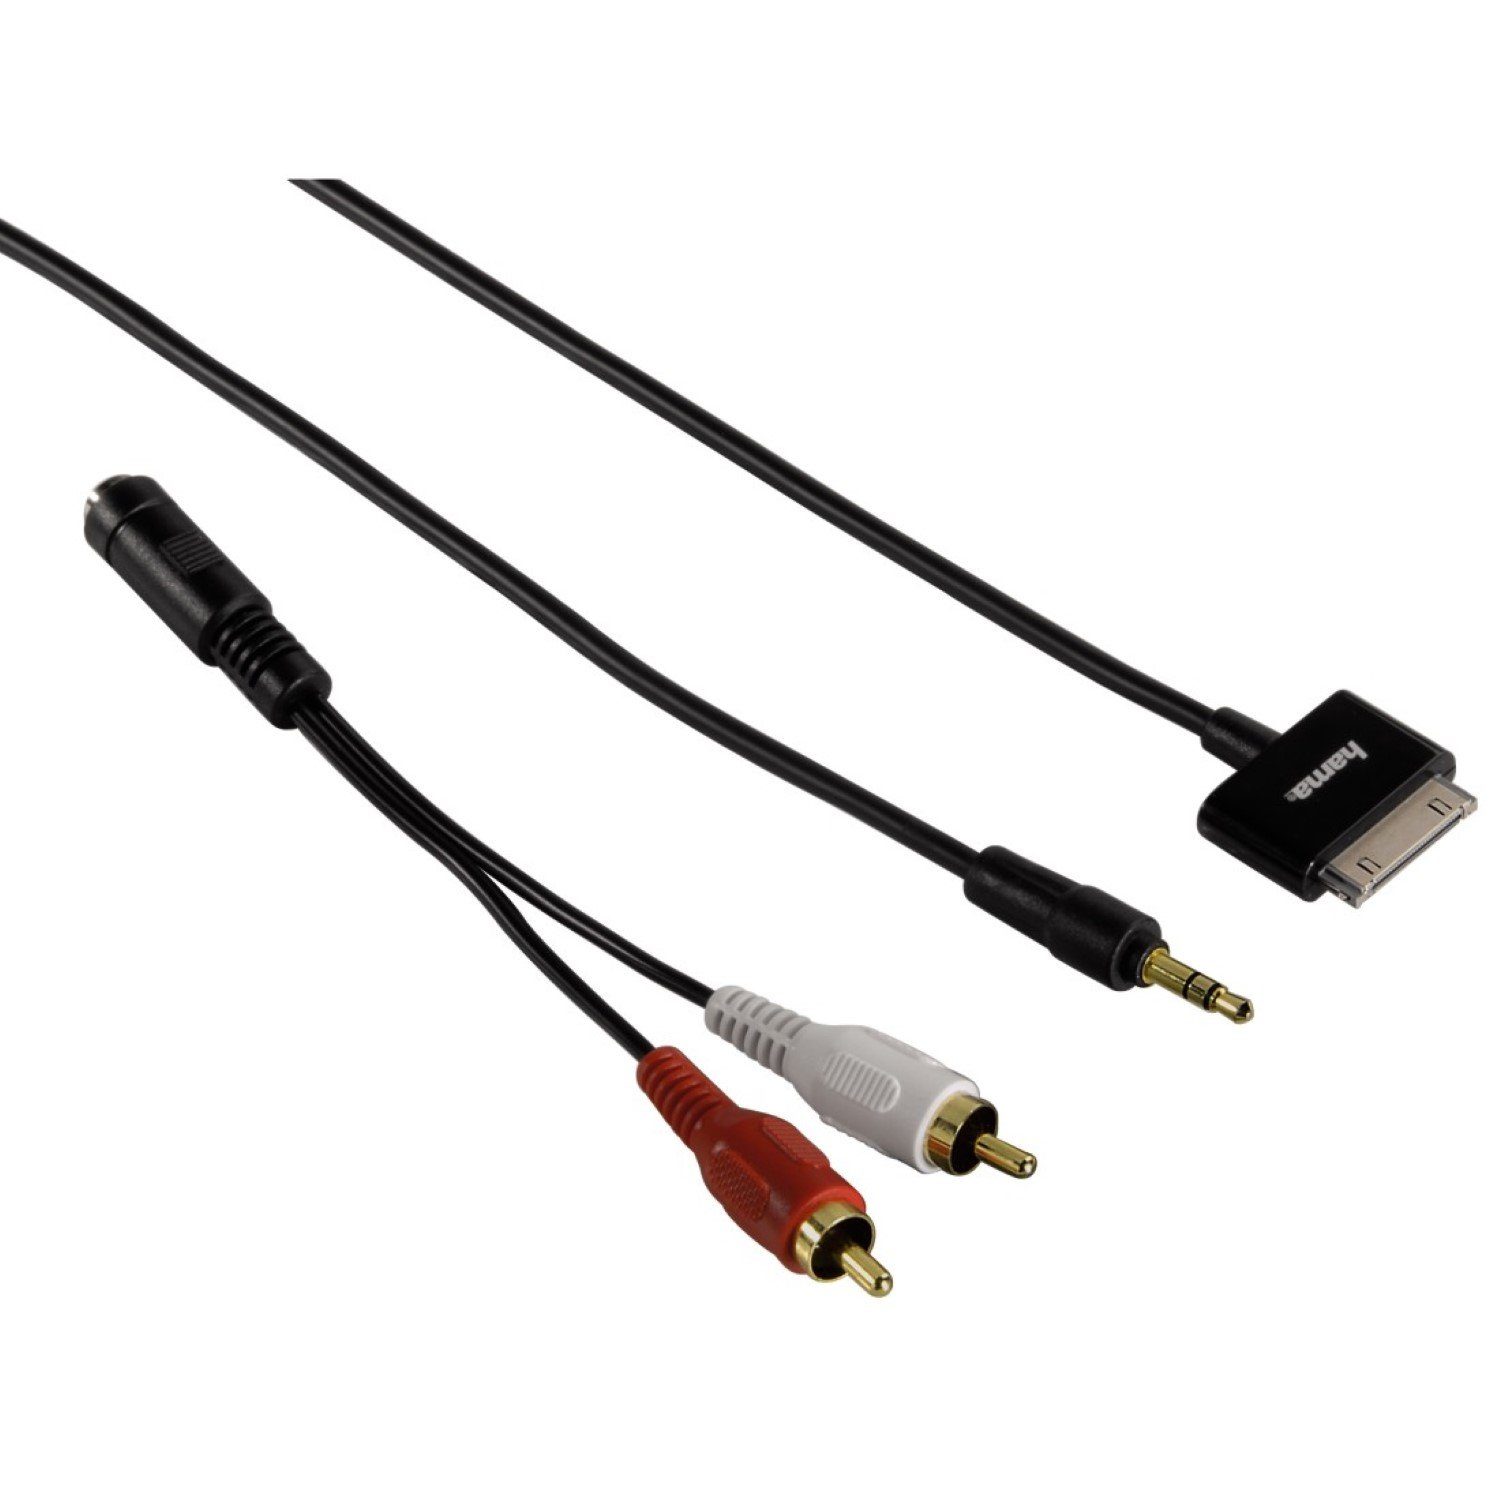 Hama »Audio-Kabel Adapter AUX 3,5mm Klinke > 30-Pin« Audio-Kabel, Cinch, 3, 5-mm-Klinke (50 cm), Apple 30Pin Dock-Connector auf 3,5mm Klinken-Stecker  oder 2x RCA Cinch-Stecker, passend für iPod, iPhone oder iPad an HiFi Anlage